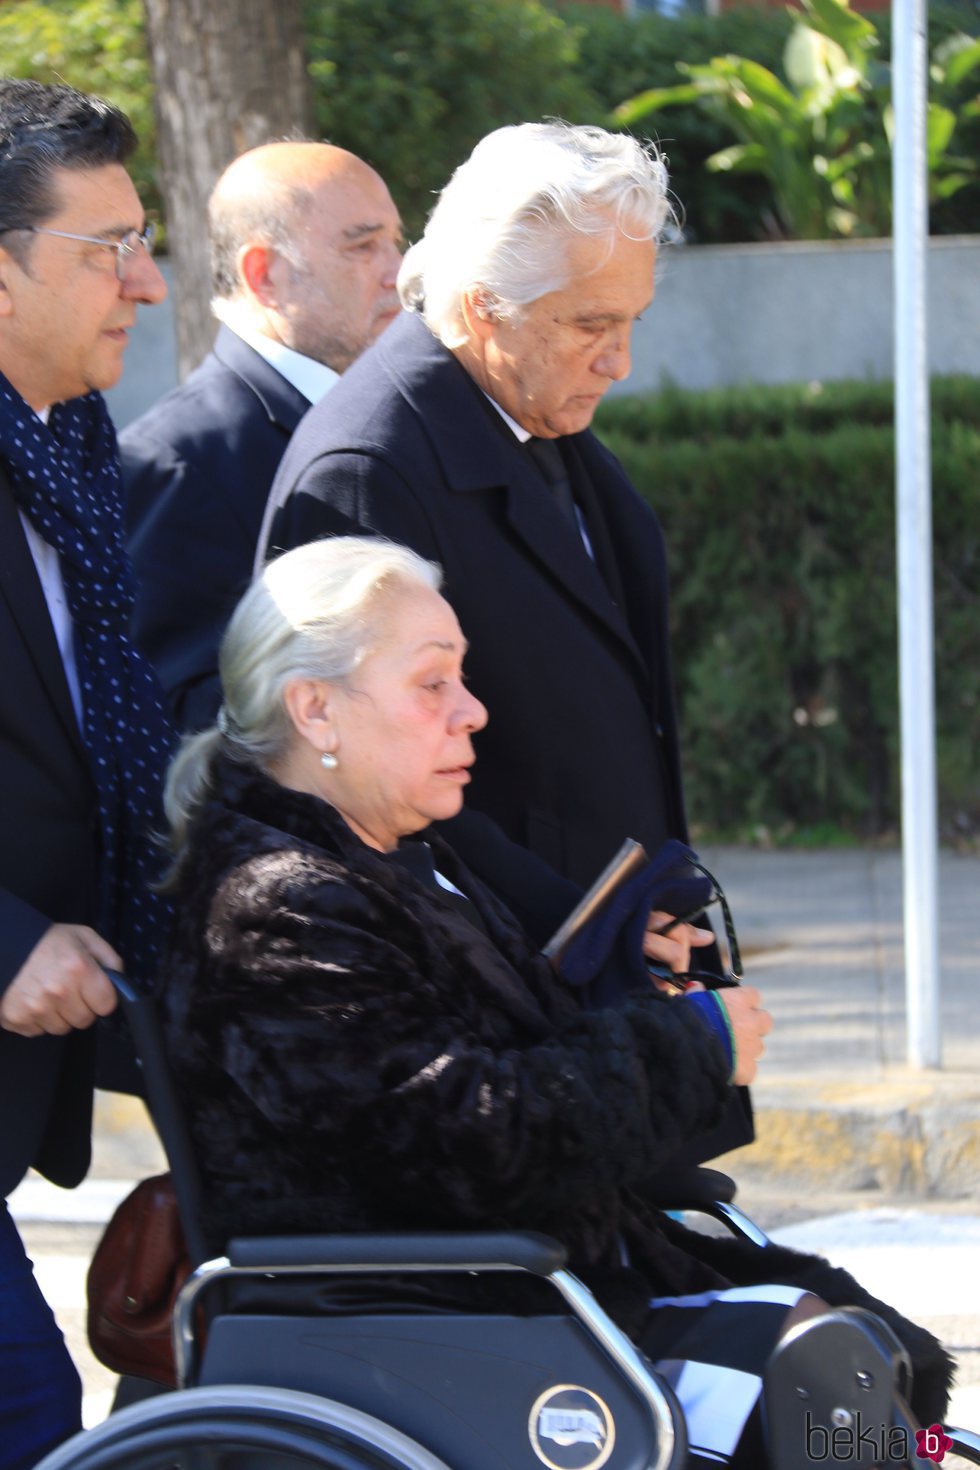 Chiquetete de la mano de Carmen Gahona en el funeral de Manuela Pantoja